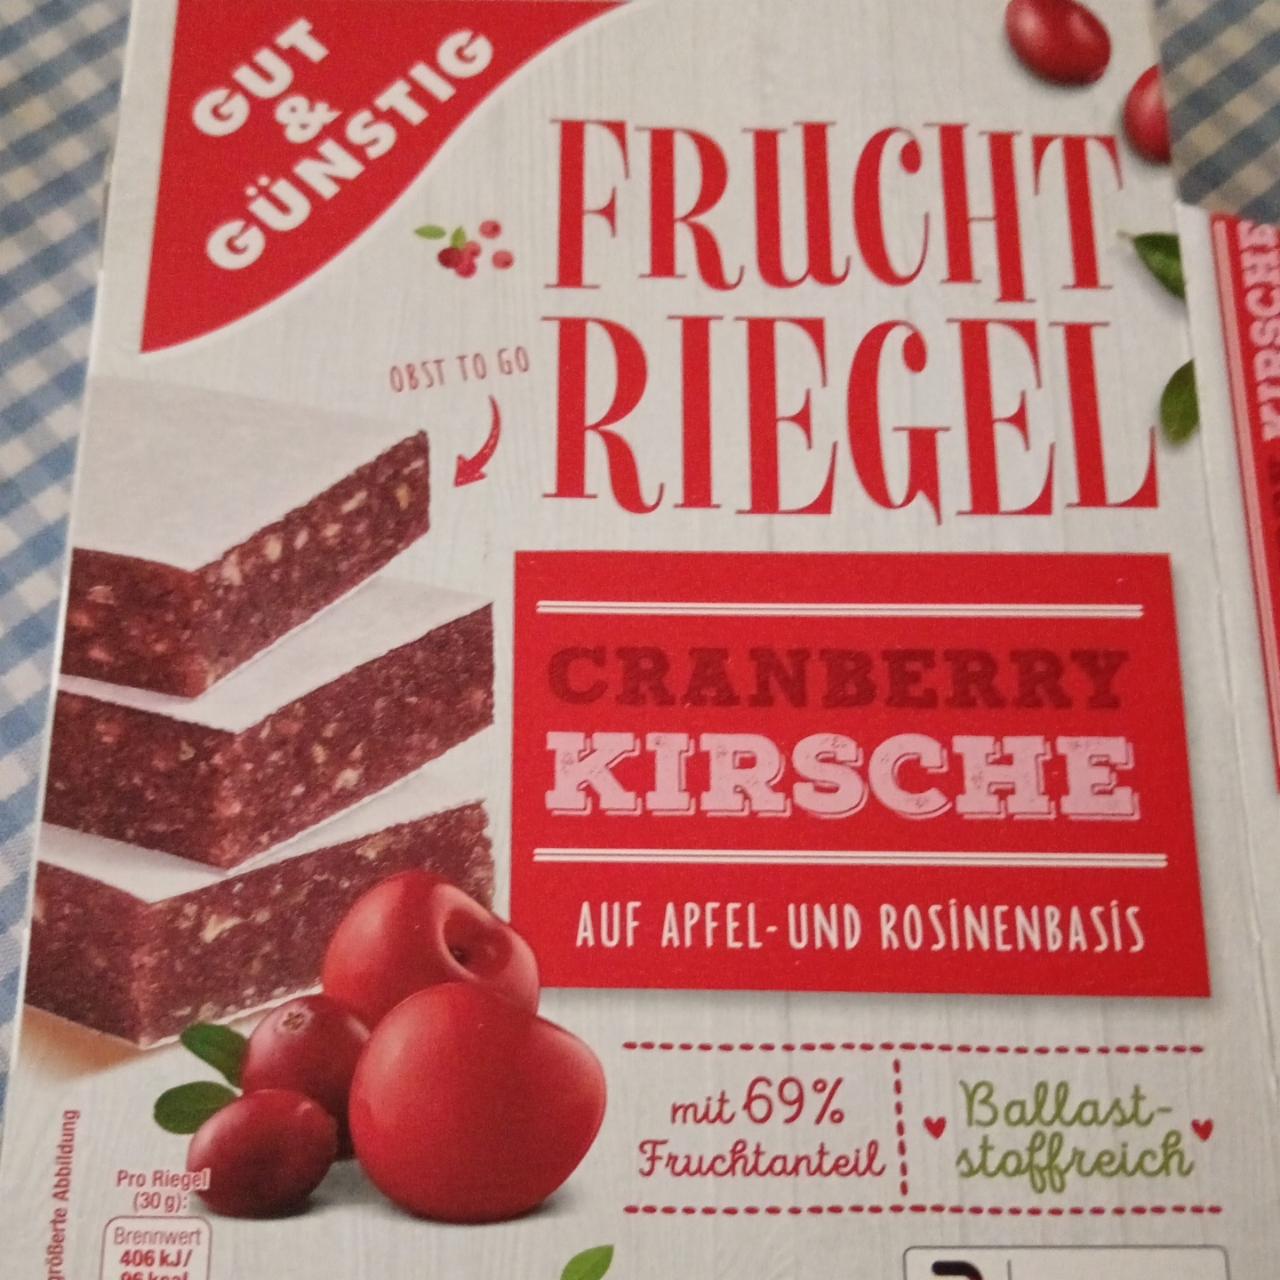 Фото - Frucht riegel cranberry kirsche Gut&Günstig